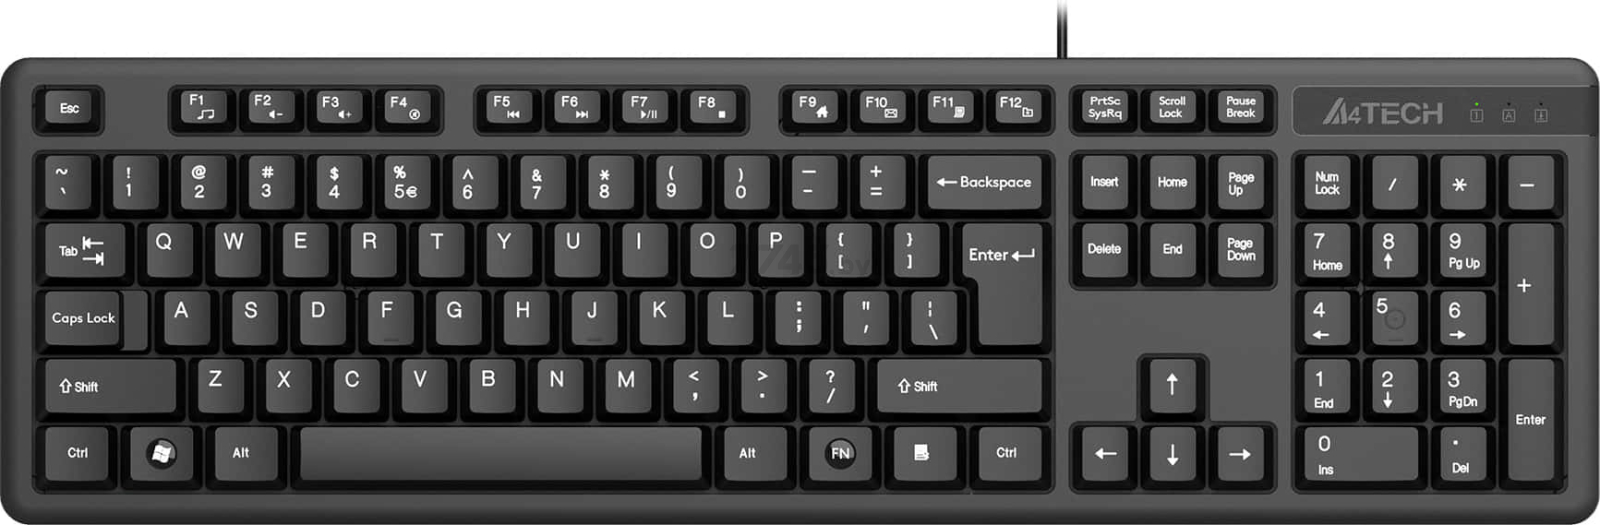 Клавиатура A4TECH KK-3 Black